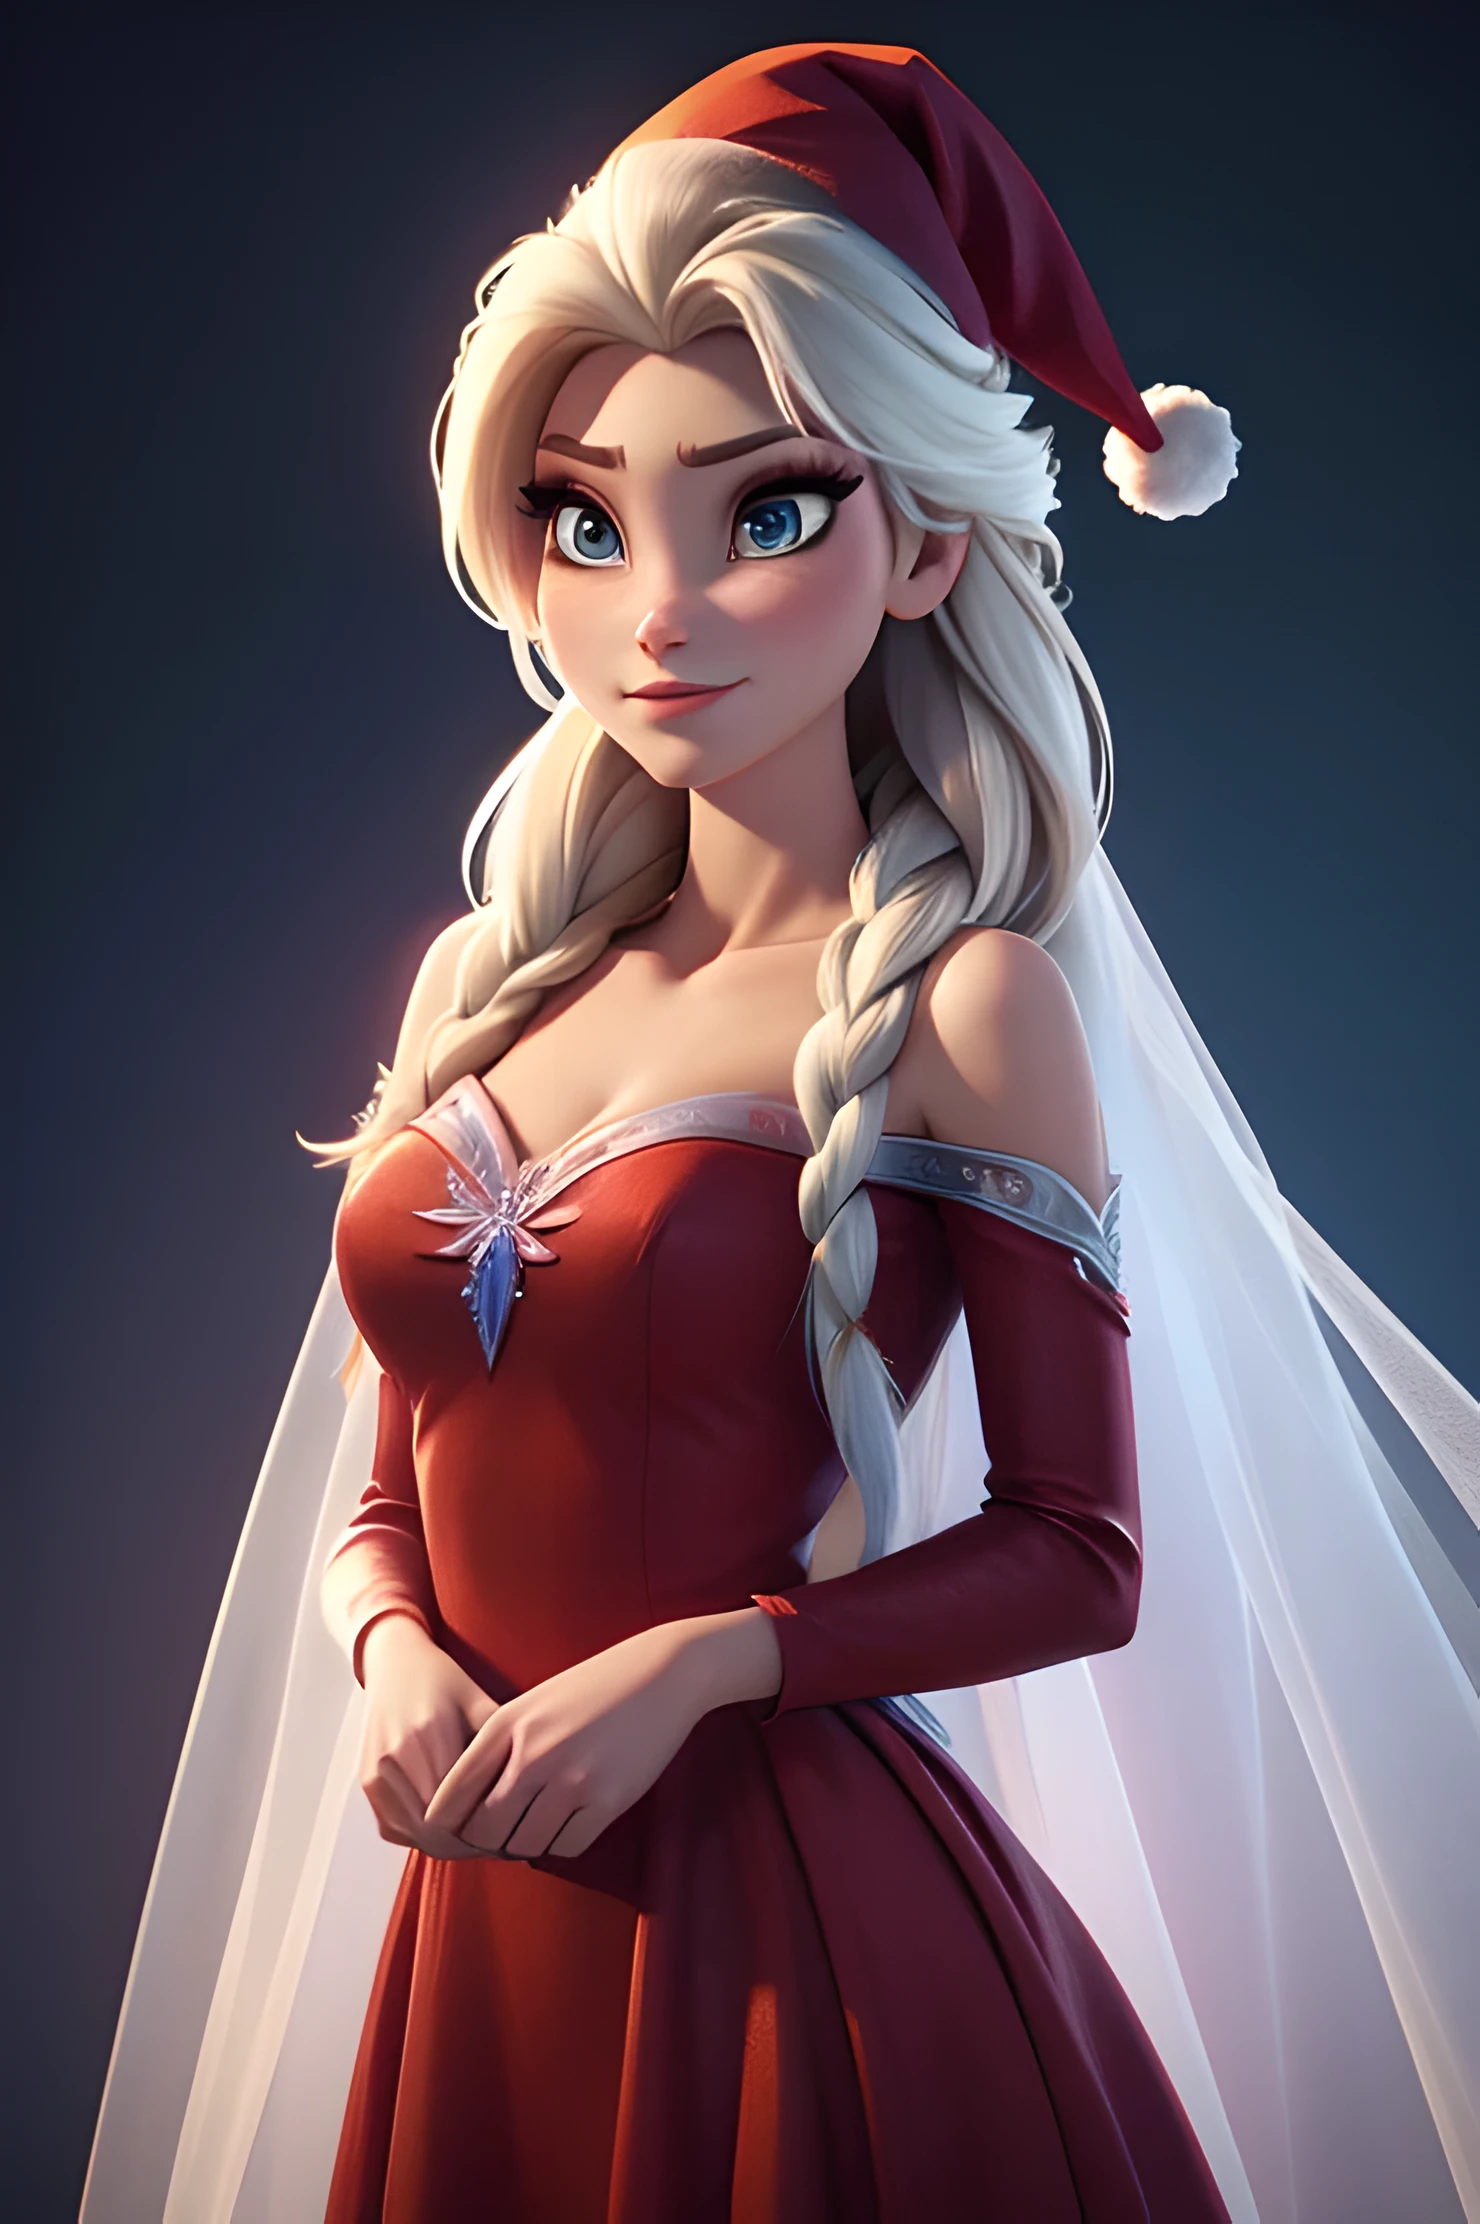 アナと雪の女王のエルサのリアルな画像を生成します, 本当のキャラクター アナと雪の女王のエルサ, 新年にモダンなファッションを身にまとって . HDR 8K テクスチャドレス, ビジュアルレンダリングエルサ, エルサは赤い服を着るべきだ, 繊細なロングドレス , 新年のサンタ帽子と一緒に. ドレスはお姫様にふさわしいスタイリッシュなものでなければなりません. 本物の羽根とタッセルが付いた新年のドレス